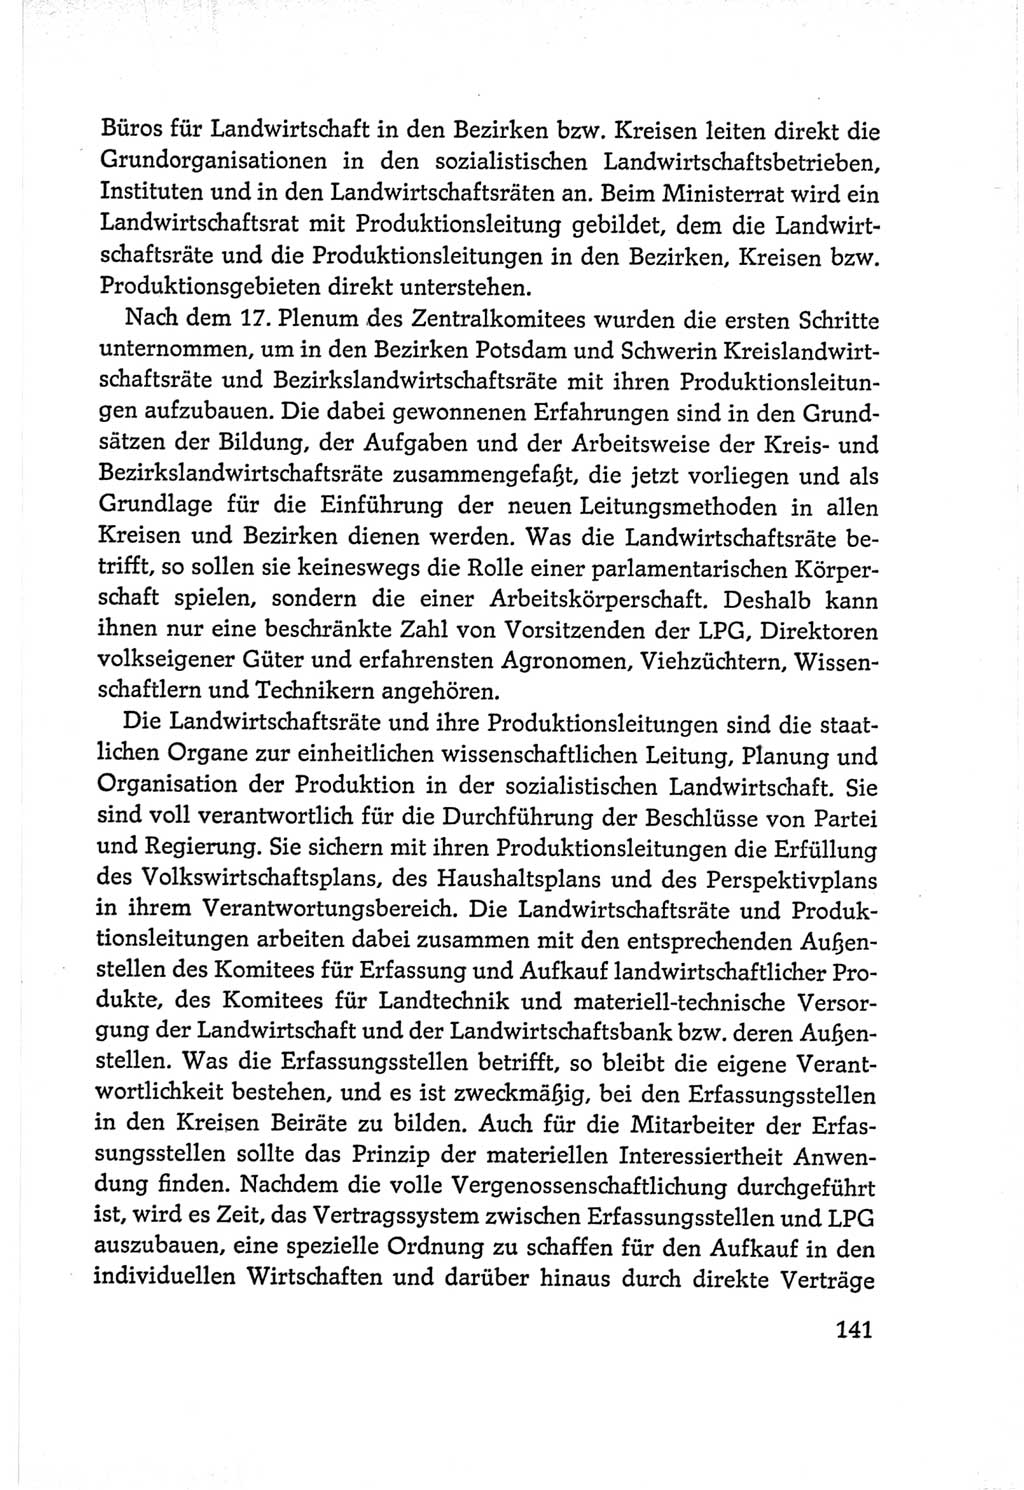 Protokoll der Verhandlungen des Ⅵ. Parteitages der Sozialistischen Einheitspartei Deutschlands (SED) [Deutsche Demokratische Republik (DDR)] 1963, Band Ⅰ, Seite 141 (Prot. Verh. Ⅵ. PT SED DDR 1963, Bd. Ⅰ, S. 141)